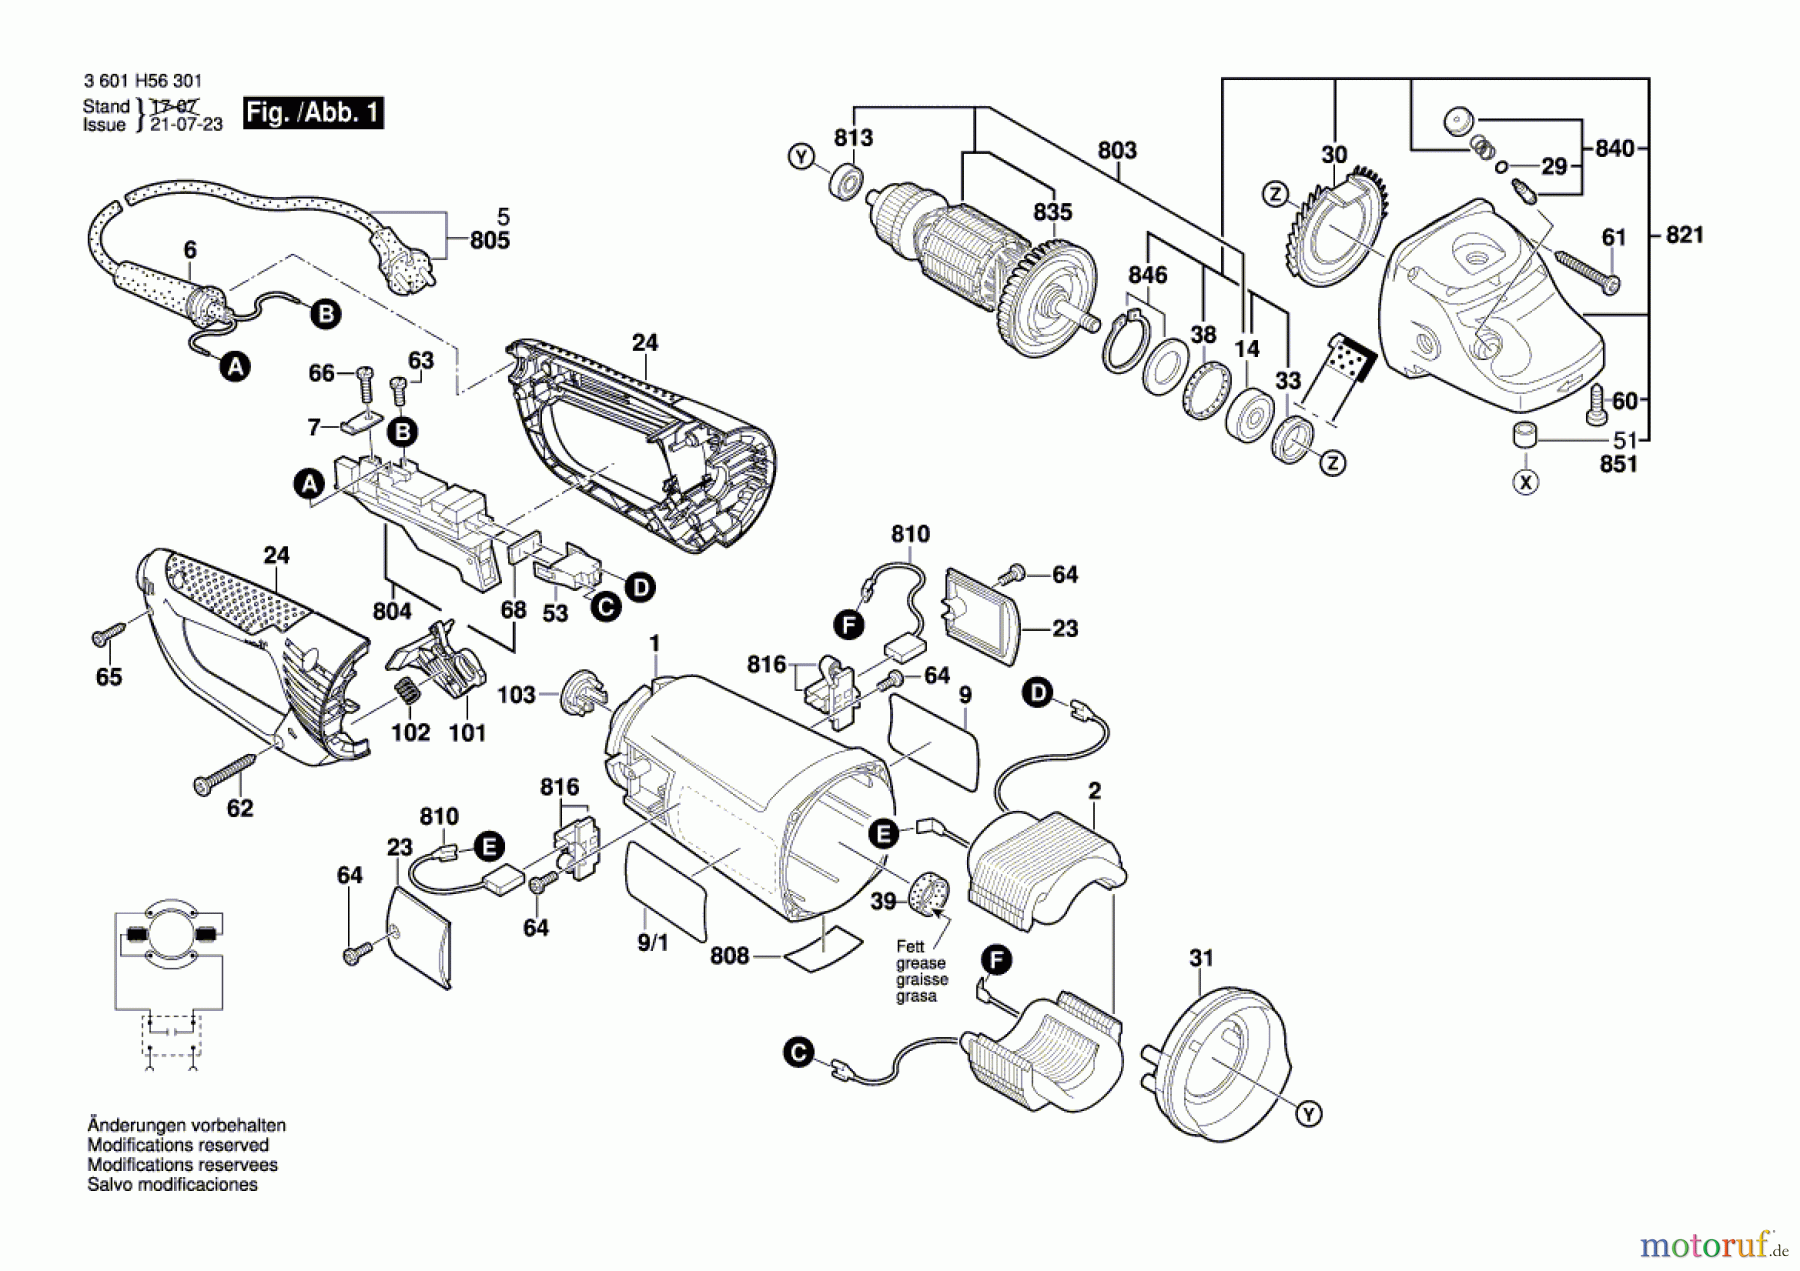  Bosch Werkzeug Winkelschleifer GWS 26-230 B Seite 1